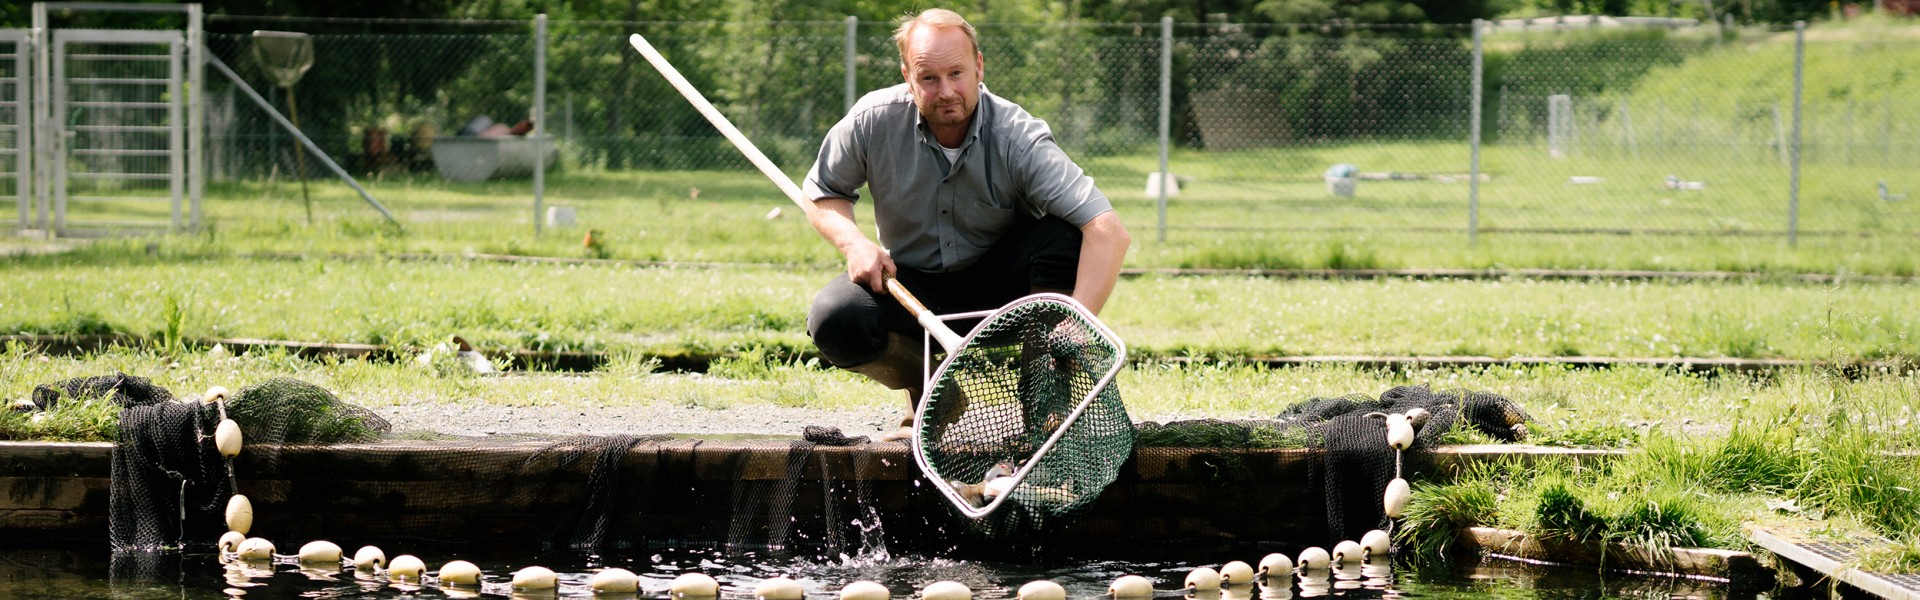 Markus Payr mit Netz am Fischteich